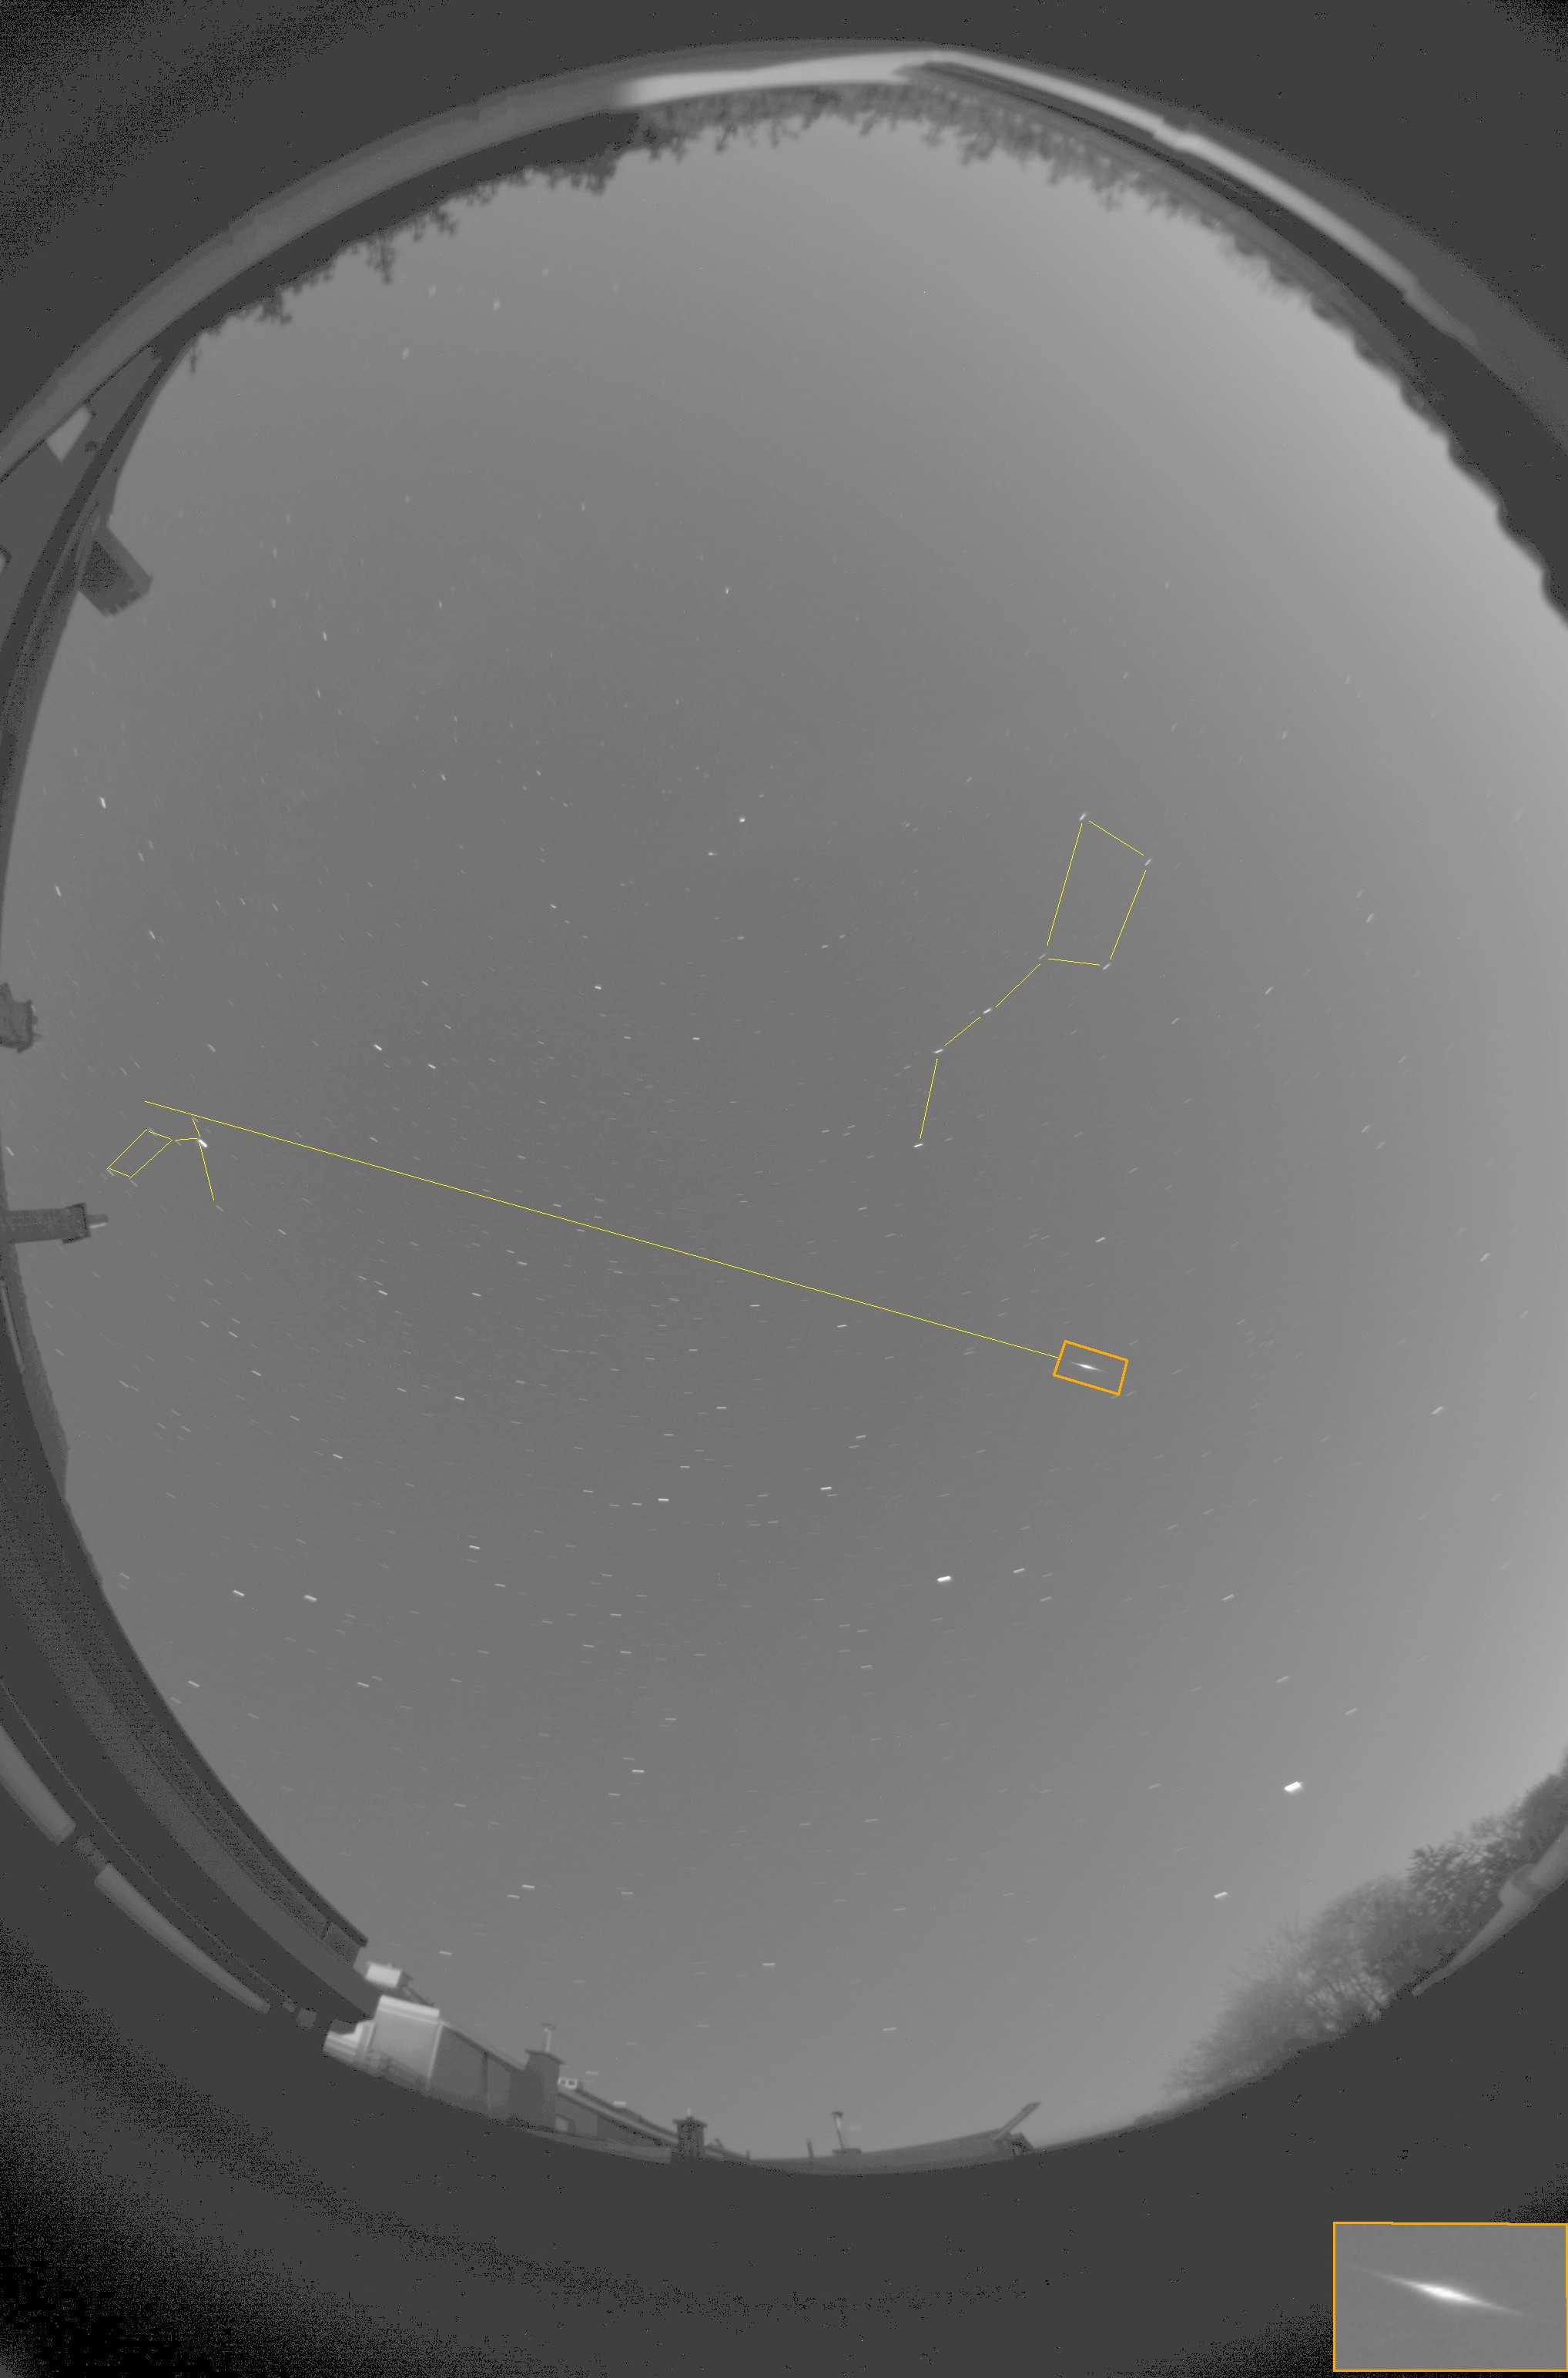 Kollár Enikő kiválóan bemutatja felvételén, hogyan kell beazonosítani a meteor rajtagságát. A narancssárga kerettel jelölt hullócsillag útvonalát egyenes vonalban meghosszabbítva a Lant mellé érünk, tehát valóban egy Lyrida lehetett! (Megj.: valójában a kép torzít, és nem teljesen egyenesen, hanem görbe vonalon kellene követni a meteor nyomát, ekkor tényleg a radiánshoz jutnánk.) Időpont: 2017. 04. 23., 23:52 UT; Forrás: www.eszlelesek.mcse.hu